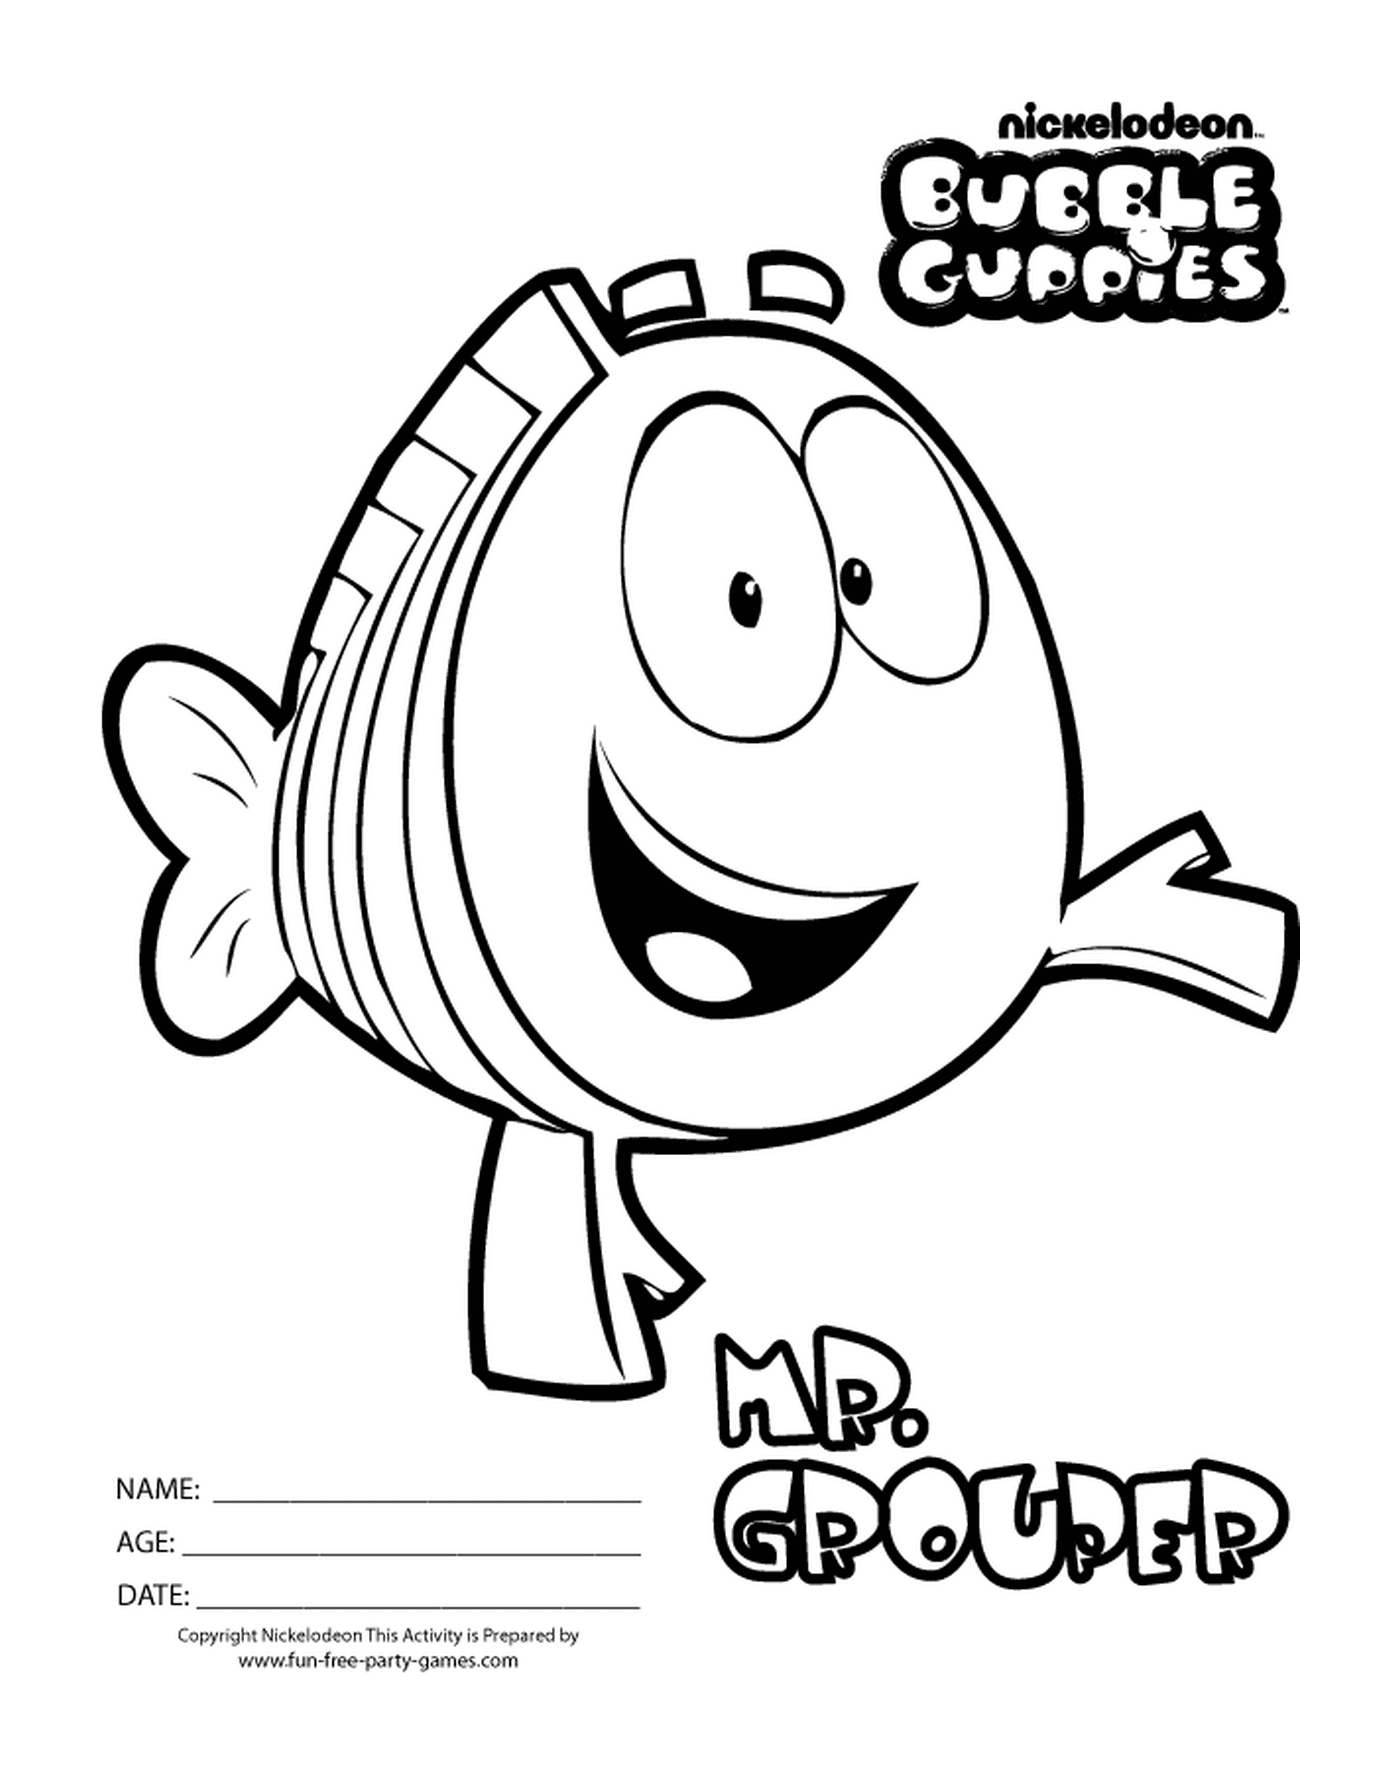   M. Grouper des Bubble Guppies, un poisson animé 